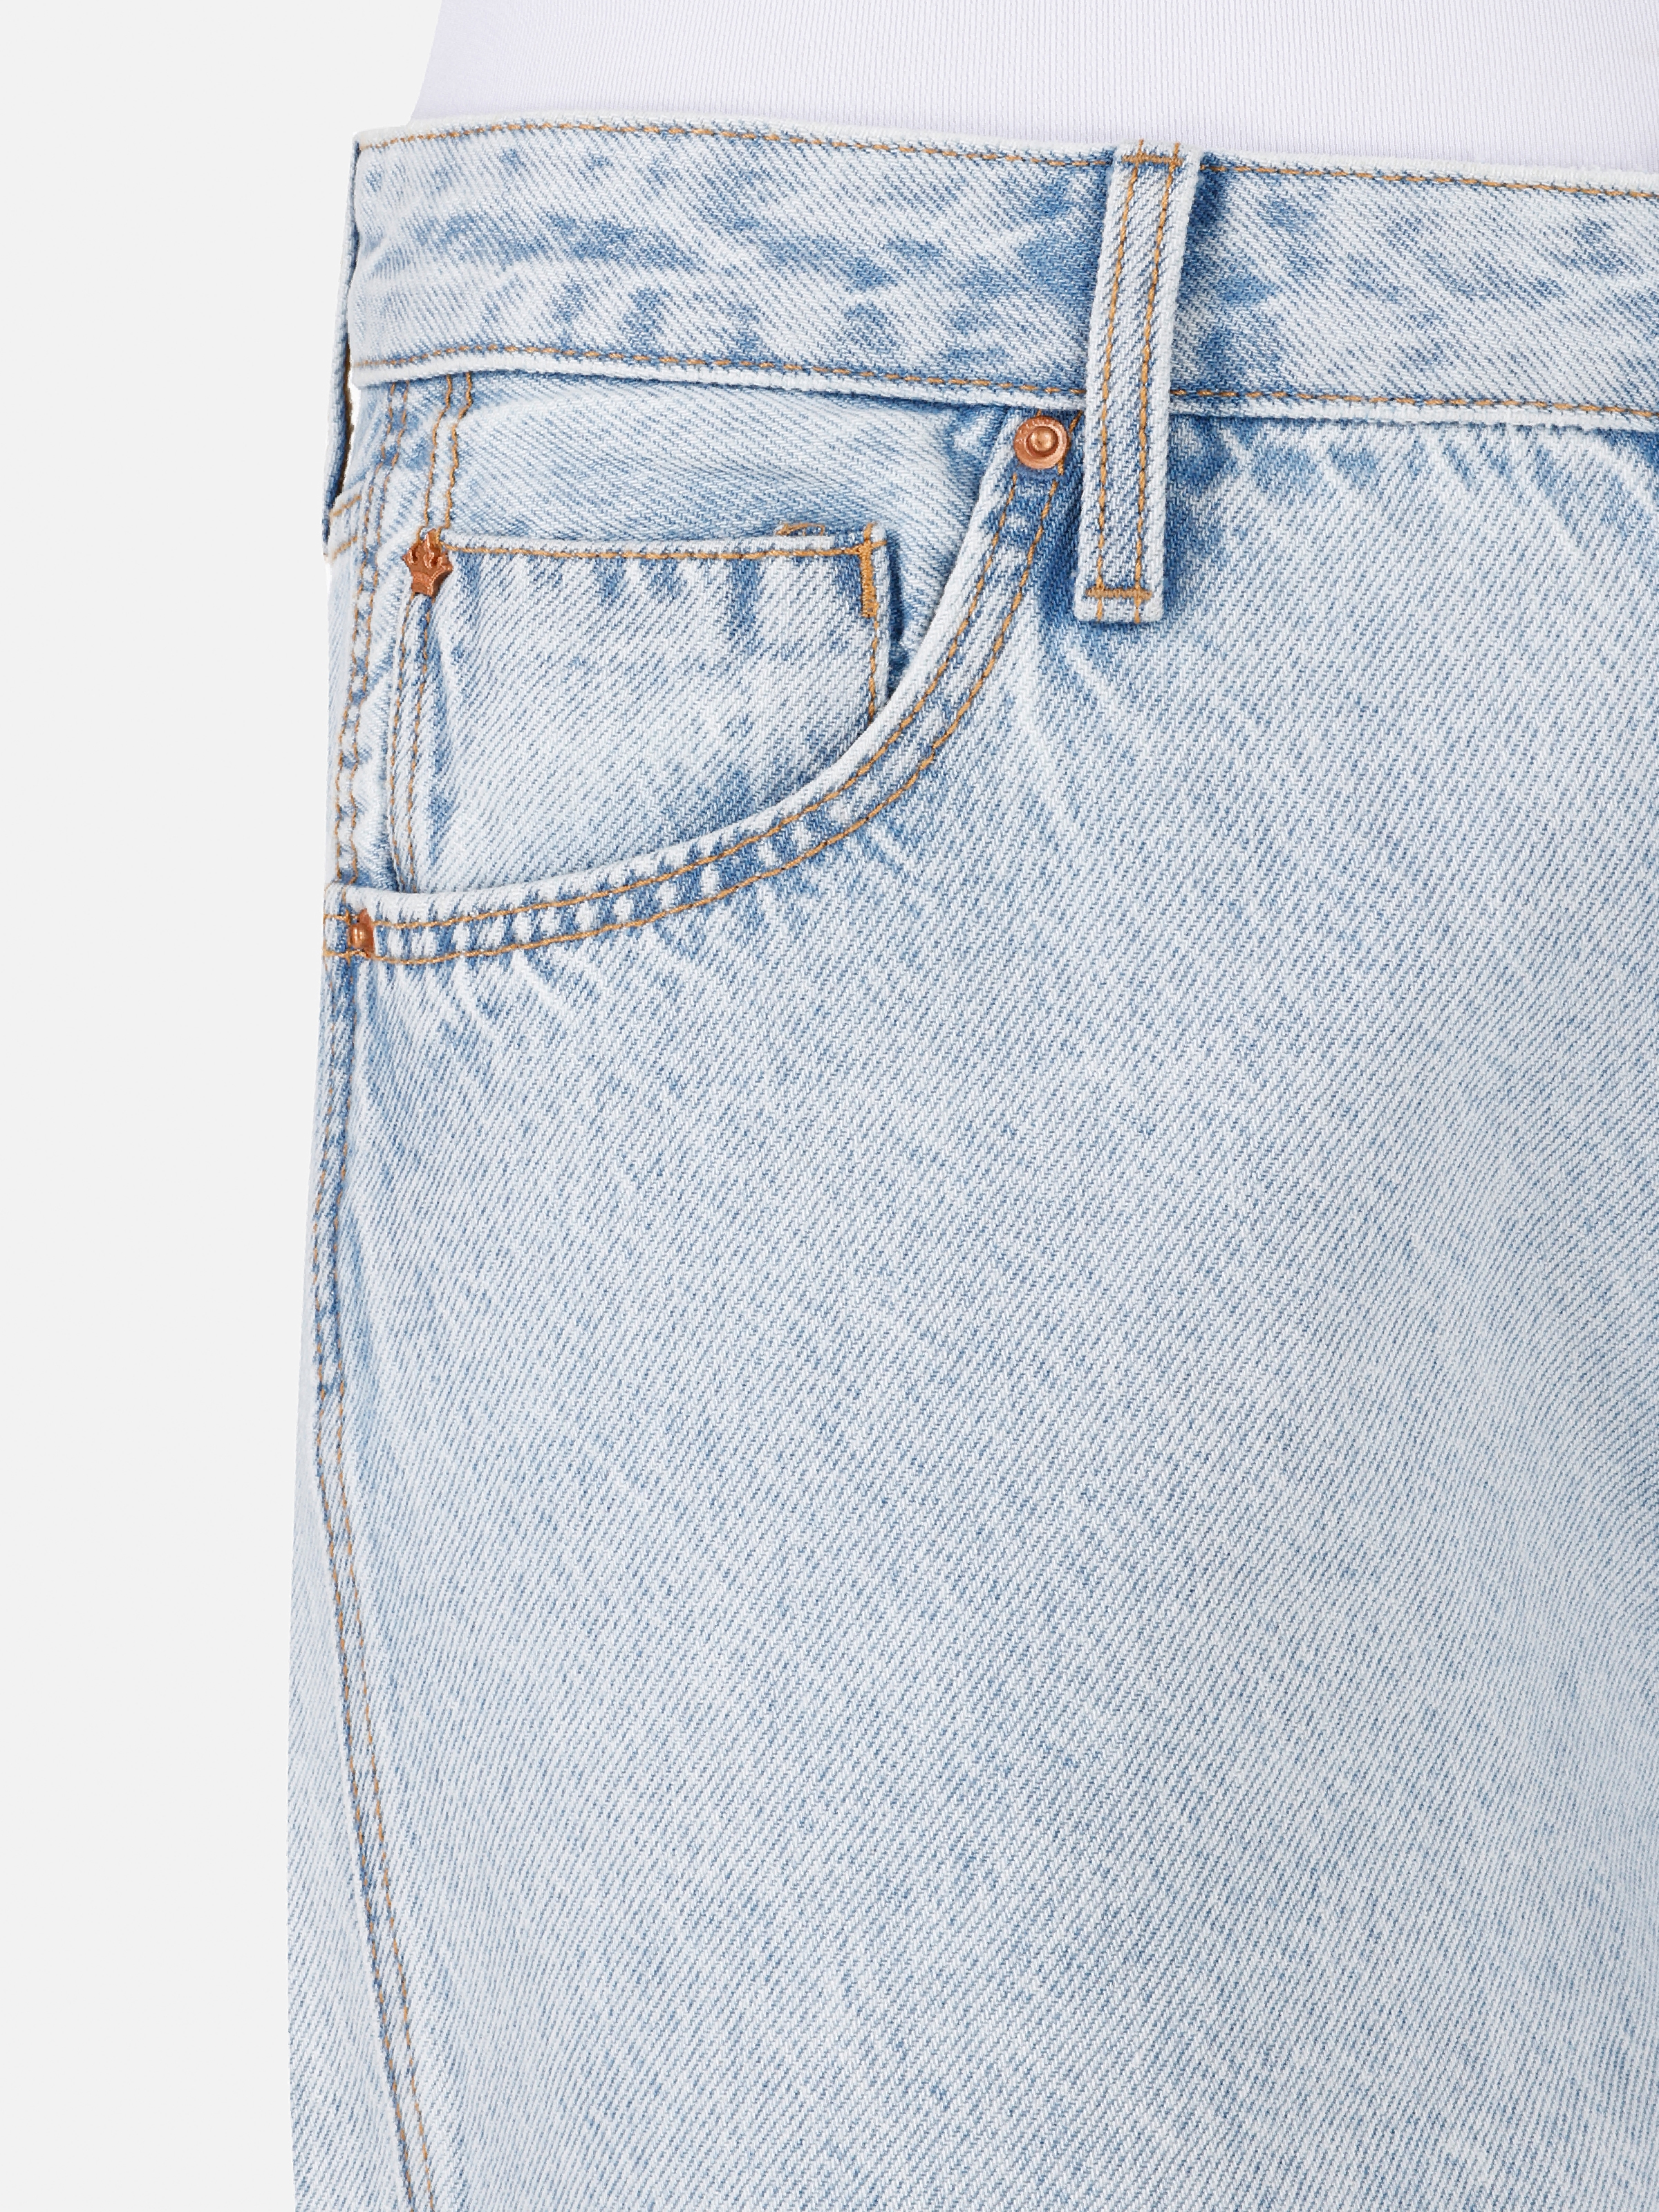 Afișați detalii pentru Short / Pantaloni Scurti De Dama Denim   CL1068614